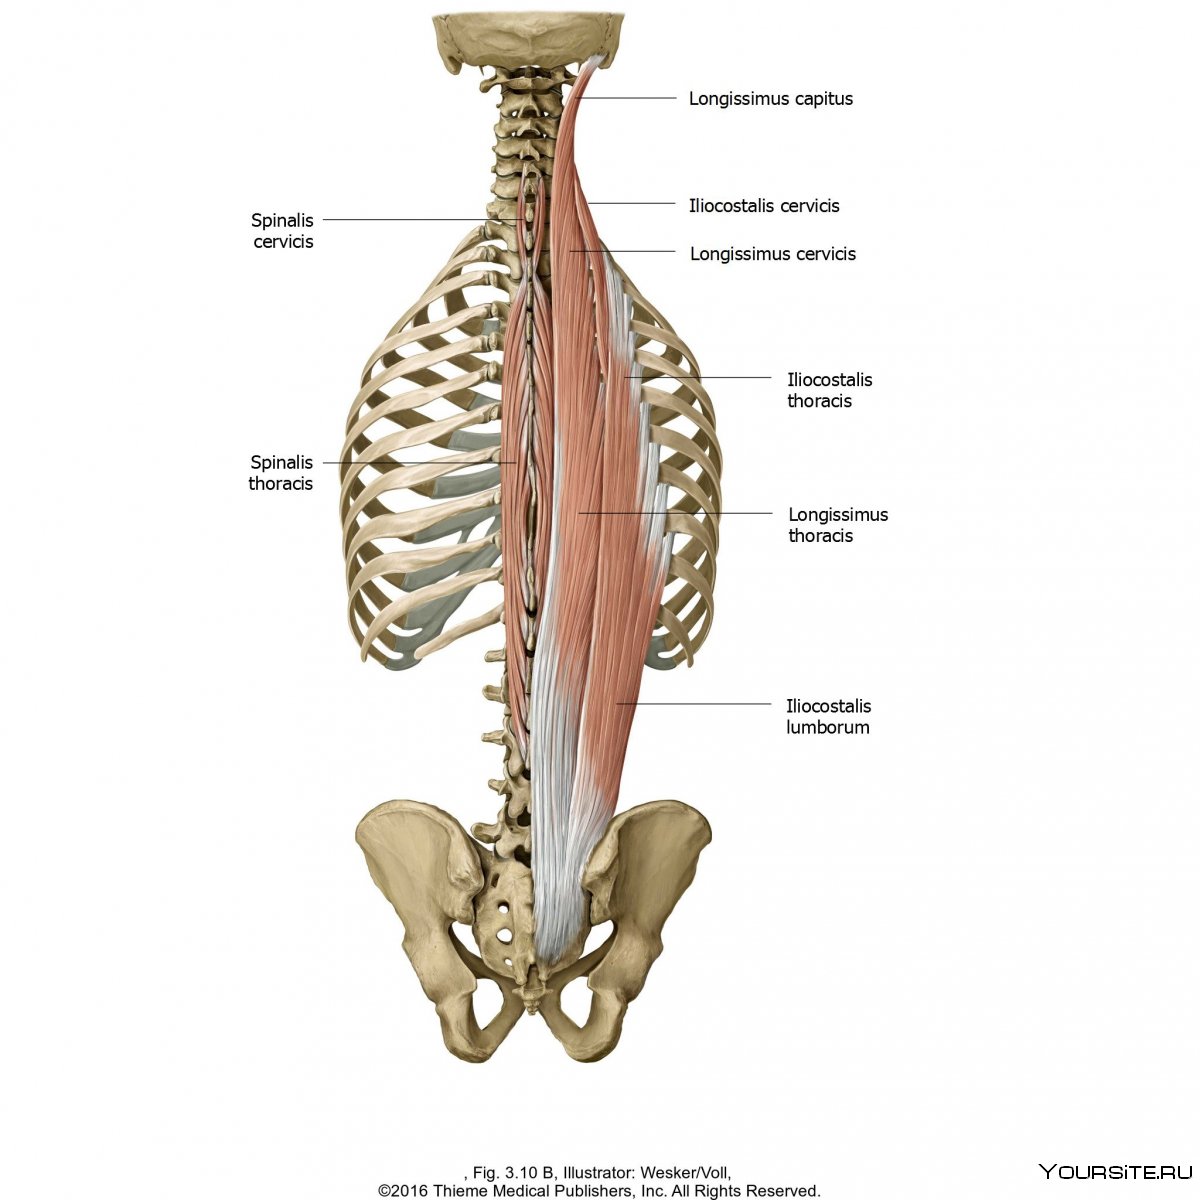 Медиальный тракт глубоких мышц спины